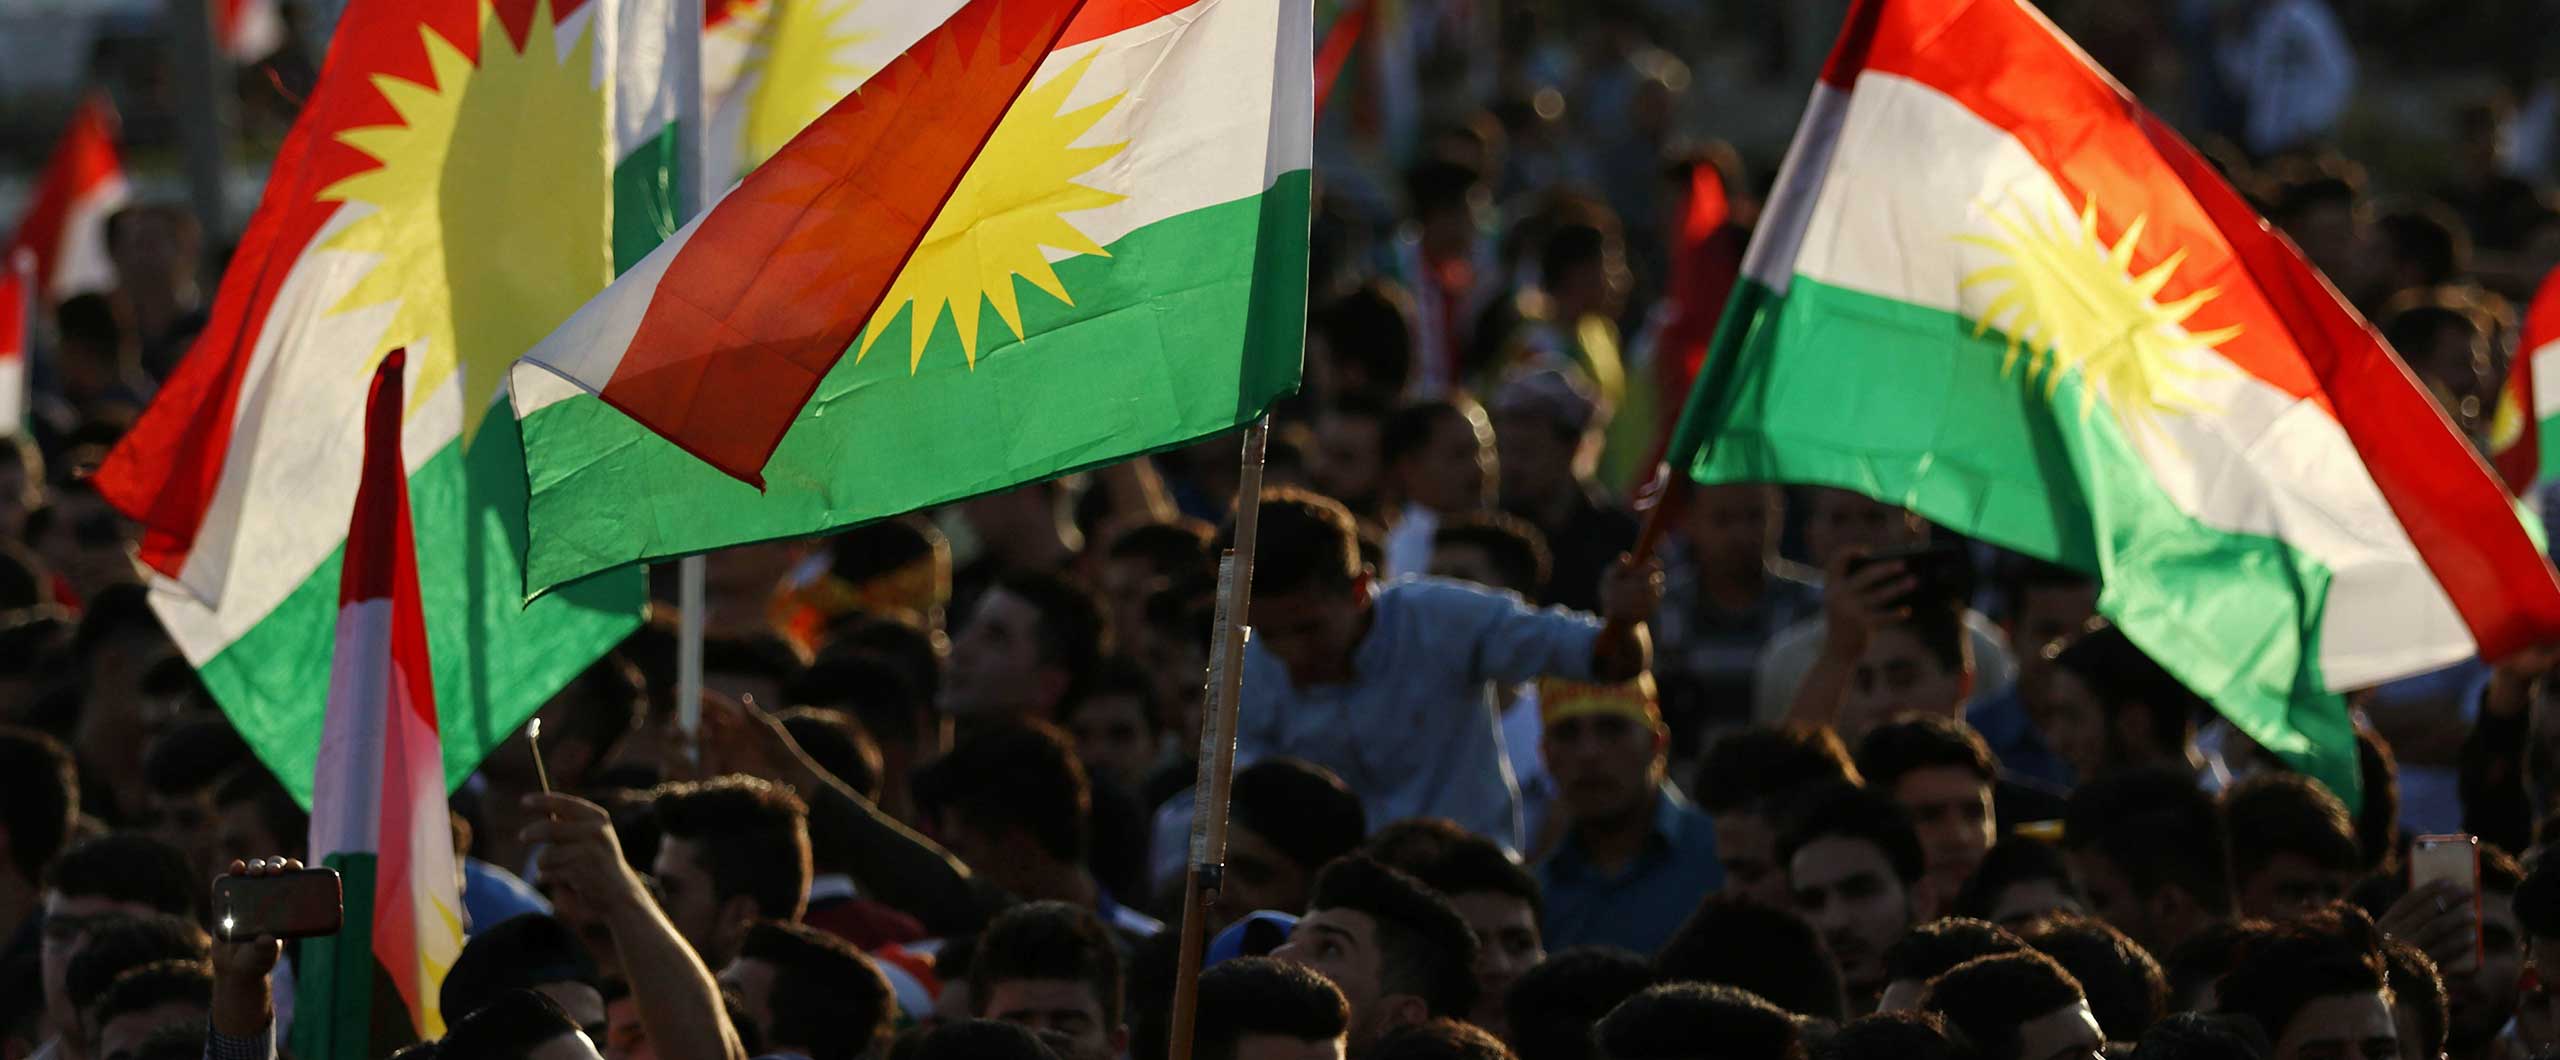 ΗΠΑ: Φόβοι πρόκλησης ταραχών και συγκρούσεων στο Ιράκ… ενόψει του Κουρδικού δημοψηφίσματος